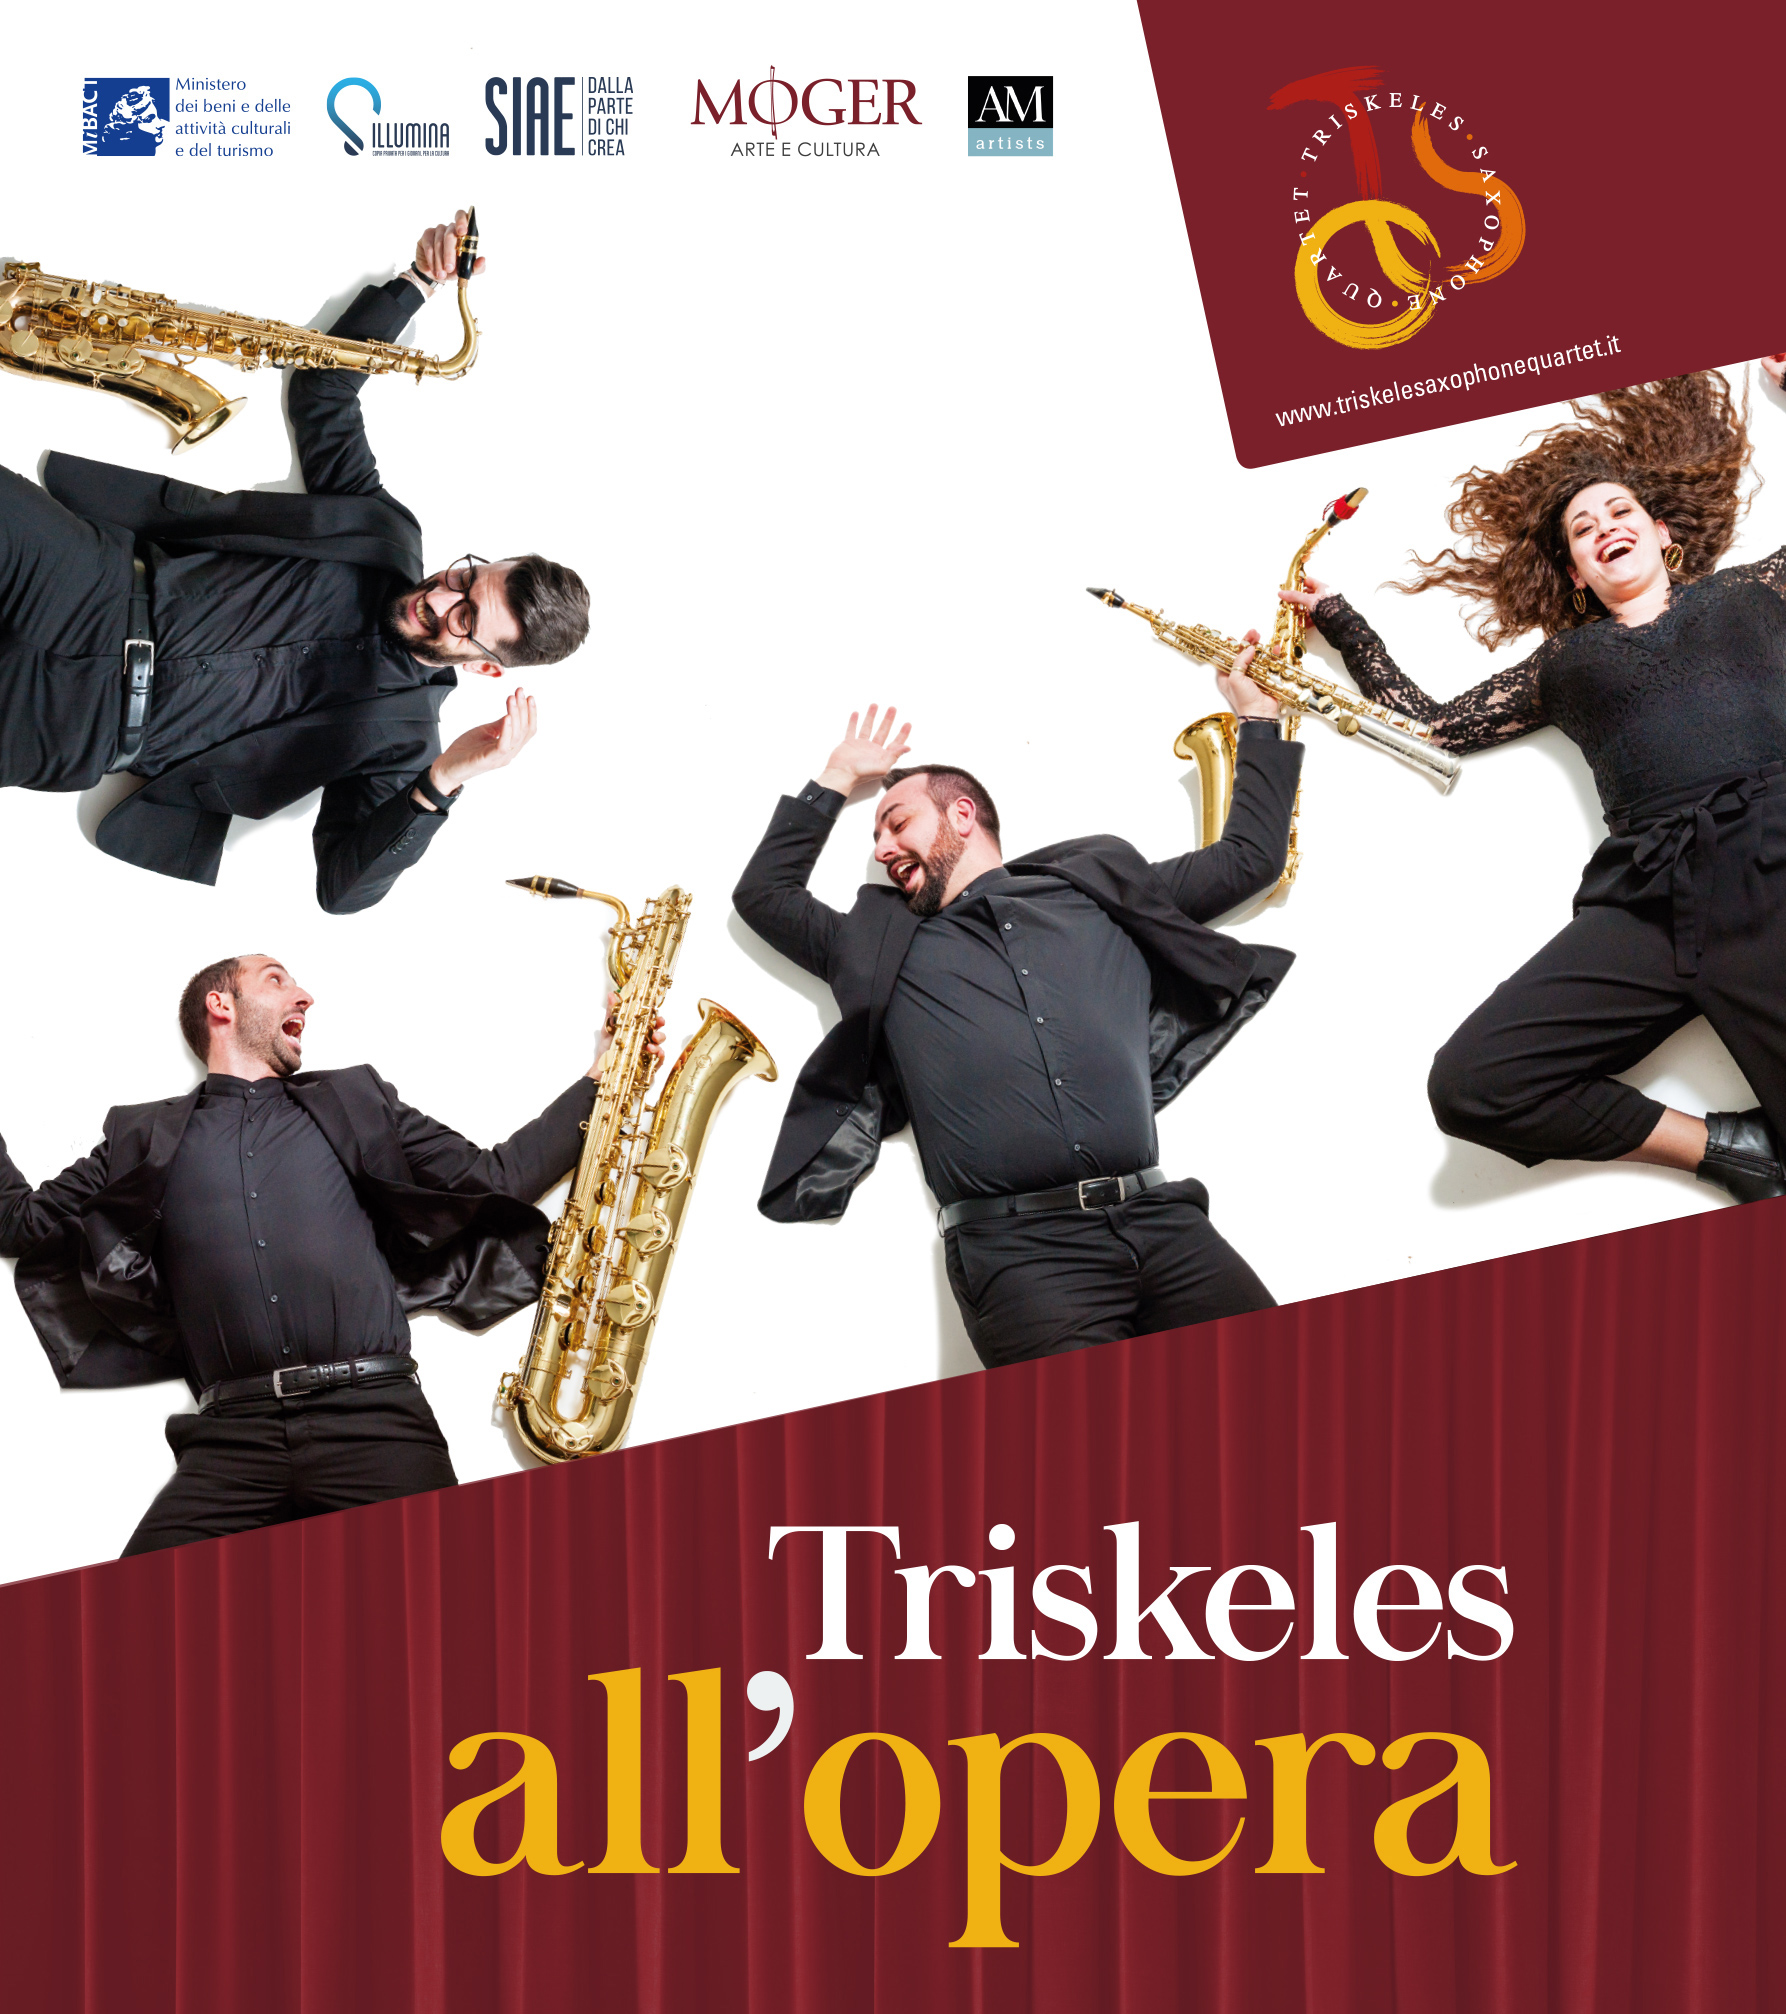 Triskele Saxophone Quartet dalla Sicilia al Casentino per la serata del 22 luglio del Festival Valenzano Symphony al Castello di Valenzano